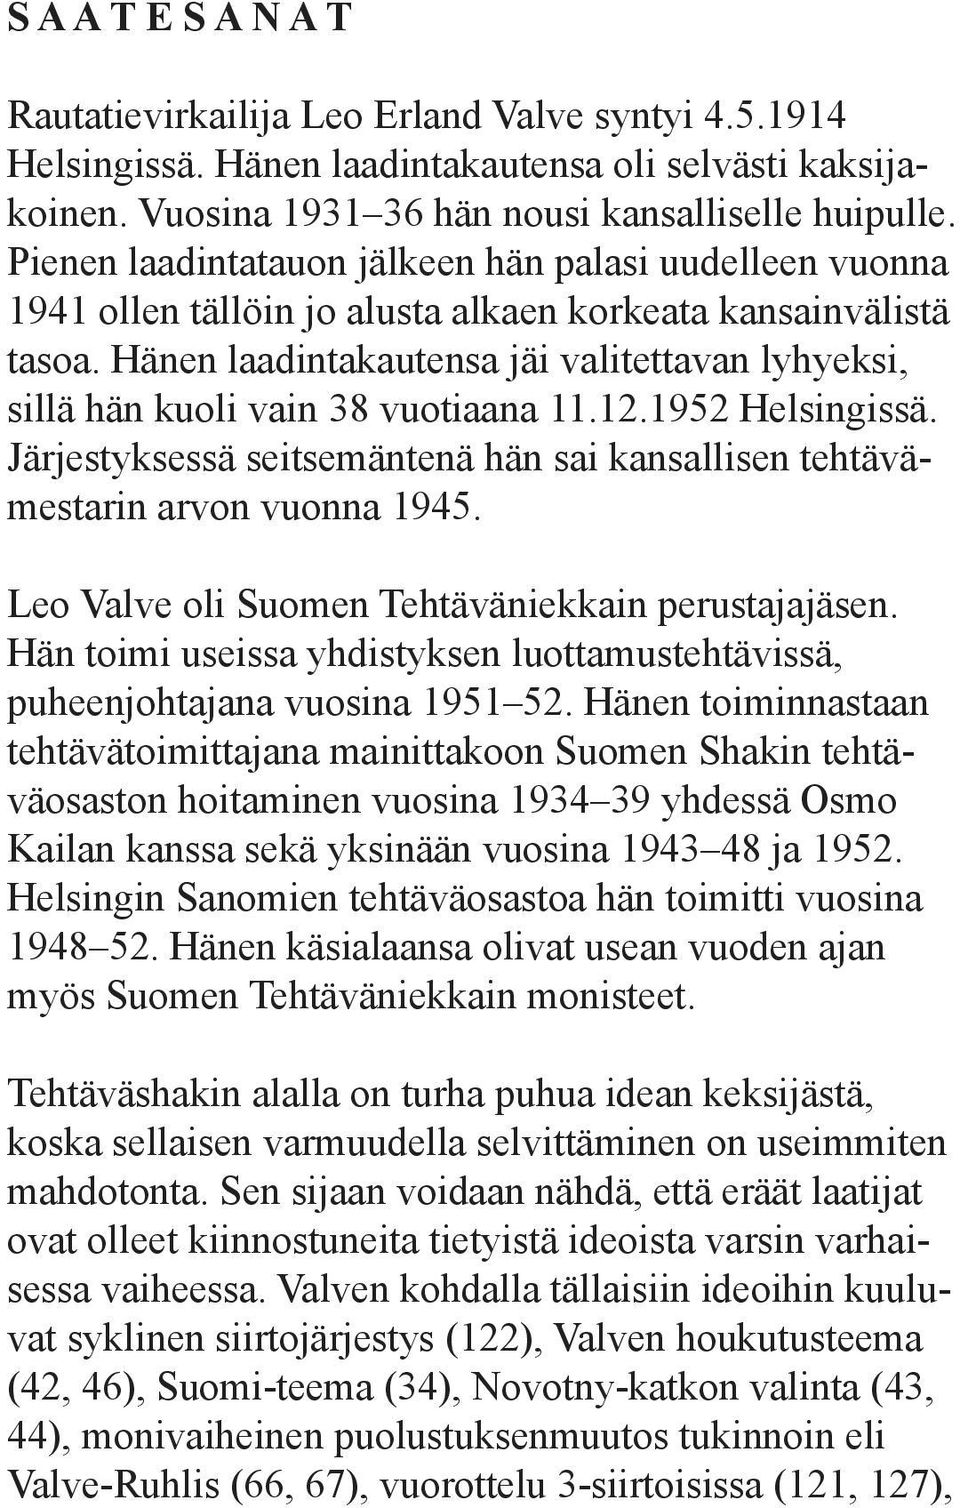 Hänen laadintakautensa jäi valitettavan lyhyeksi, sillä hän kuoli vain 38 vuotiaana 11.12.1952 Helsingissä. Järjestyksessä seitsemäntenä hän sai kansallisen tehtävämestarin arvon vuonna 1945.